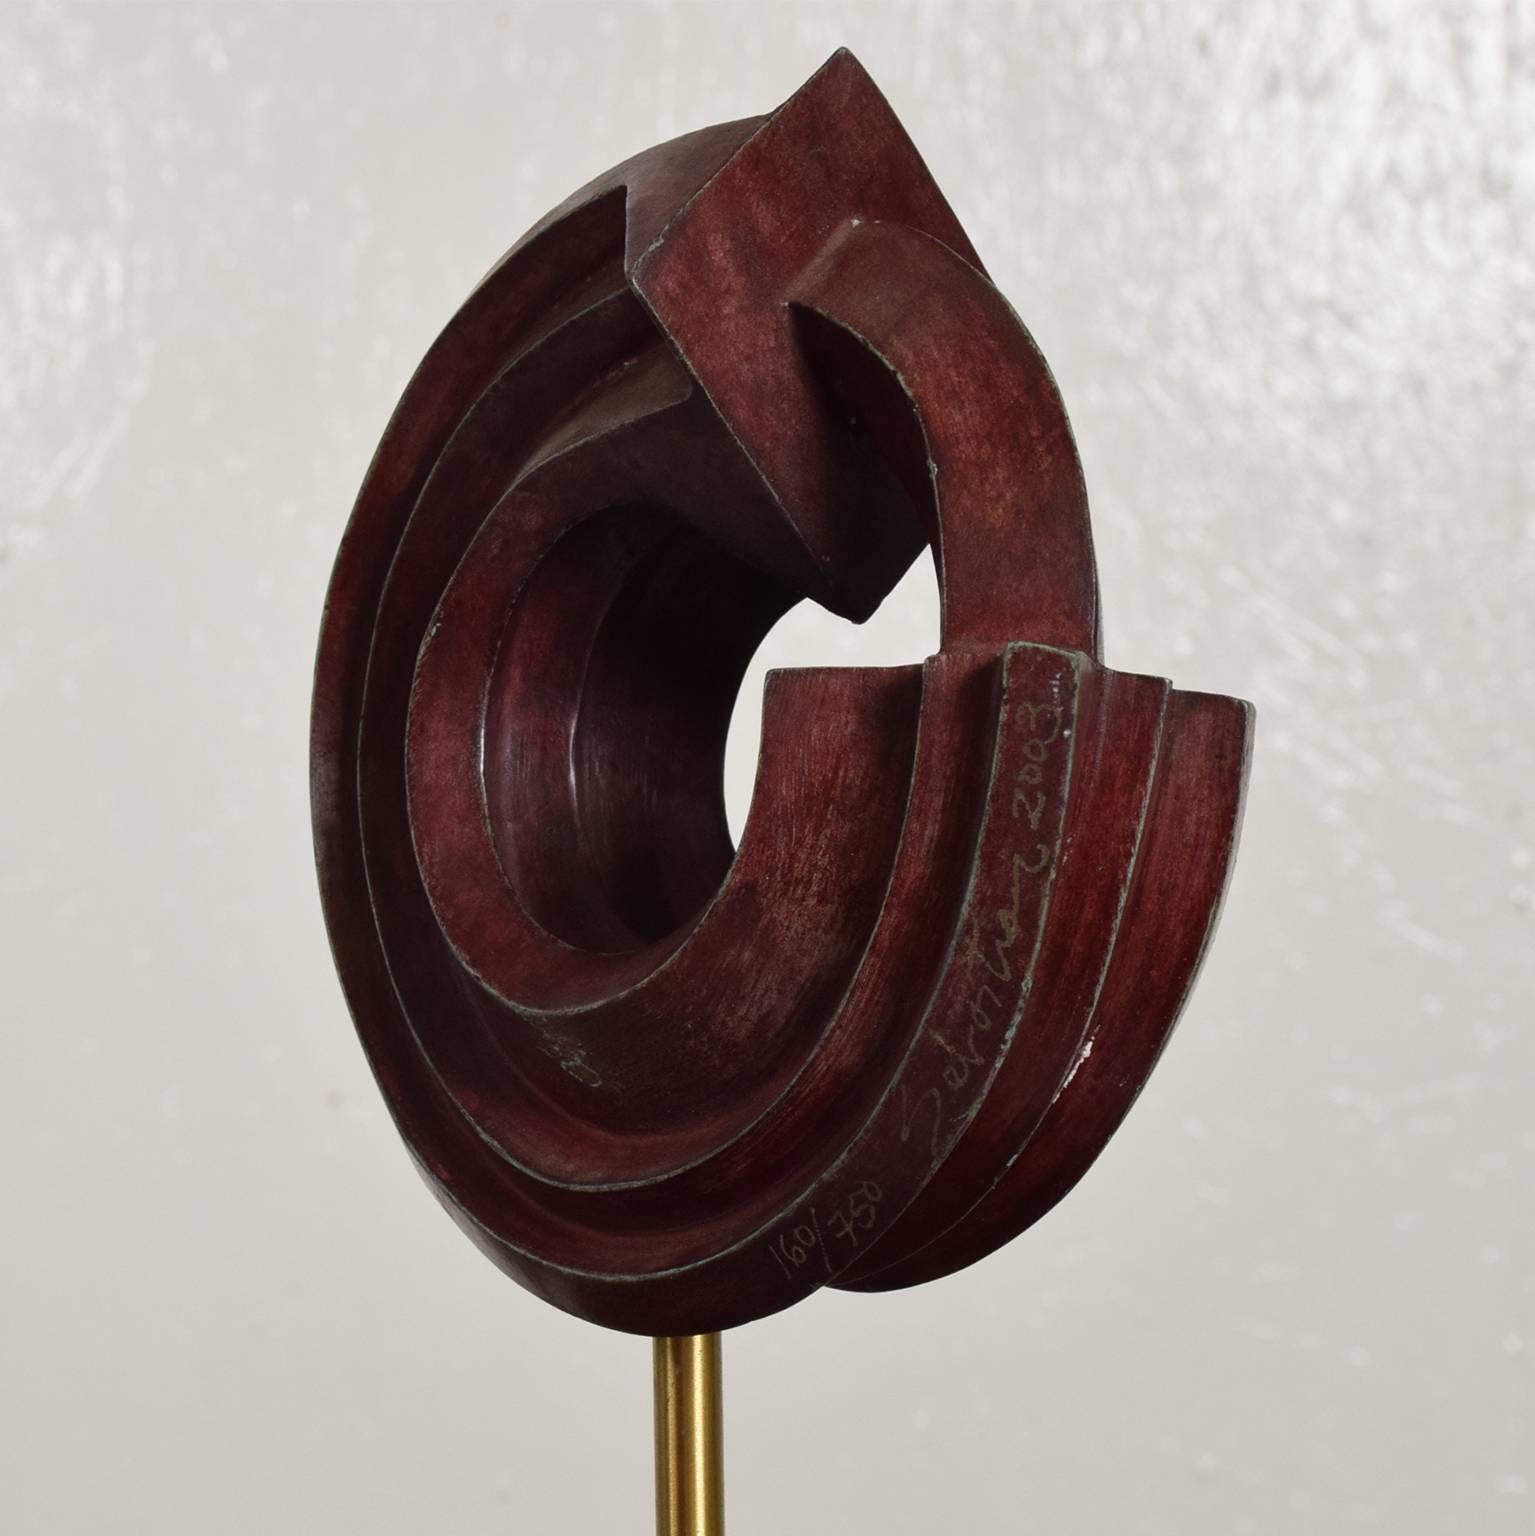 Patinated Modern Bronze Sculpture by Sebastian, Enrique Carbajal Gonzalez